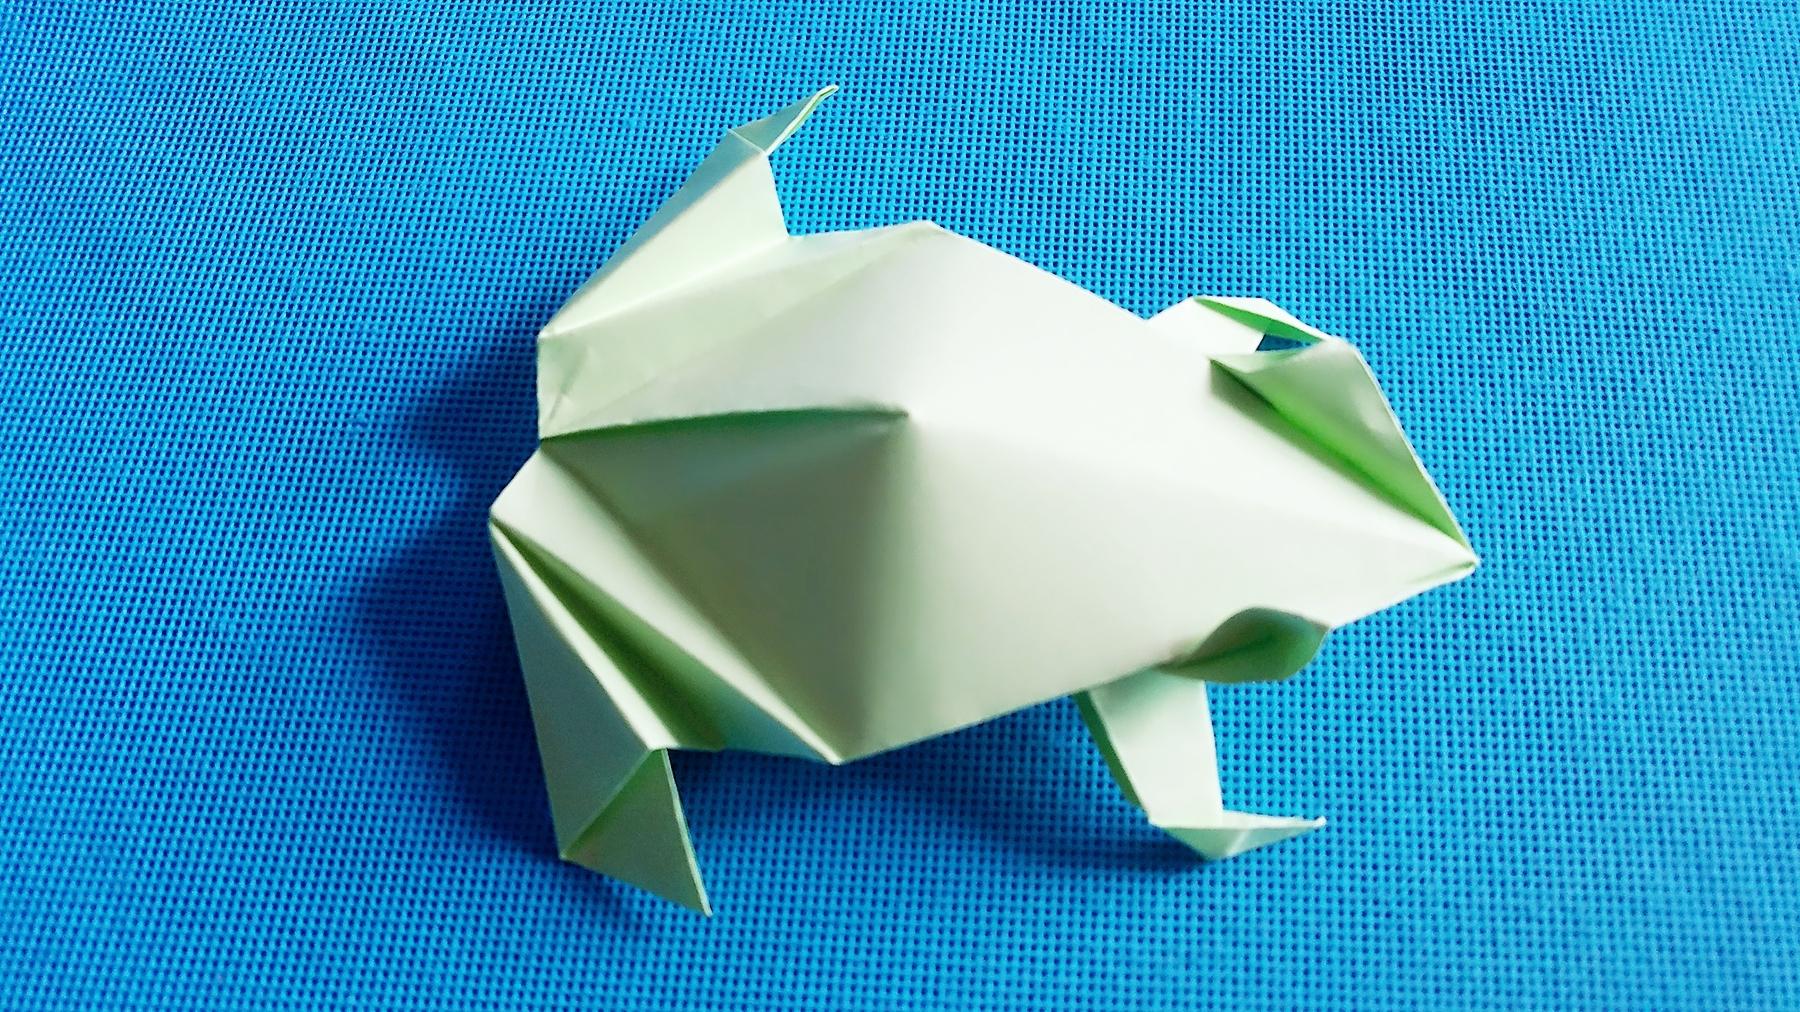 折纸王子 立体青蛙折纸教程讲解详细一看就会-折纸大全-折纸王子频道